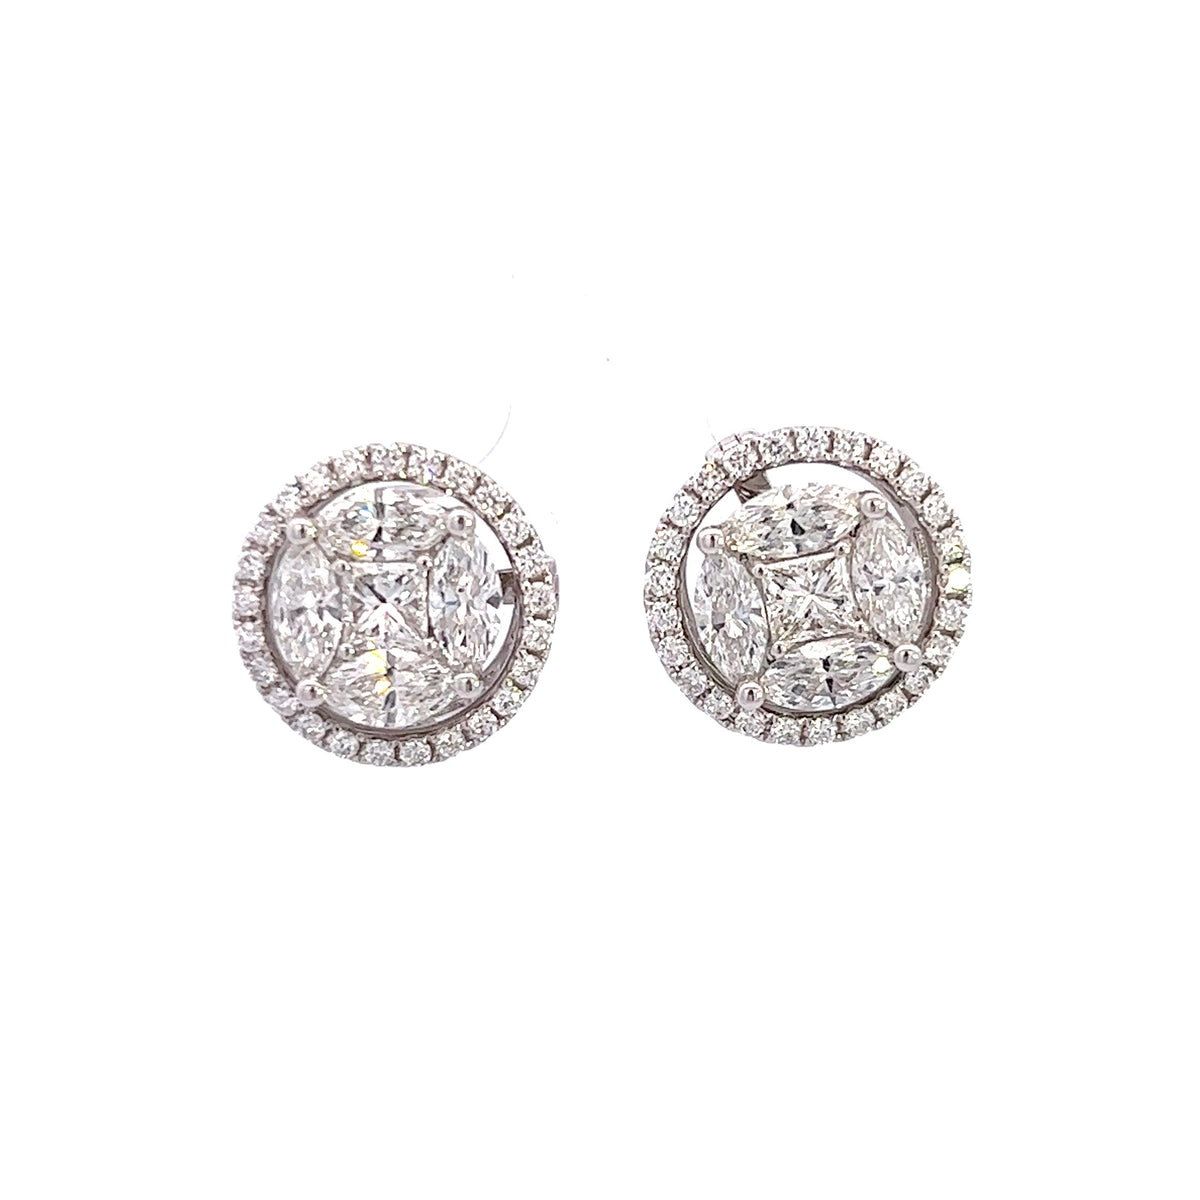 Unisex 18k White Gold Round Diamond Stud Earrings